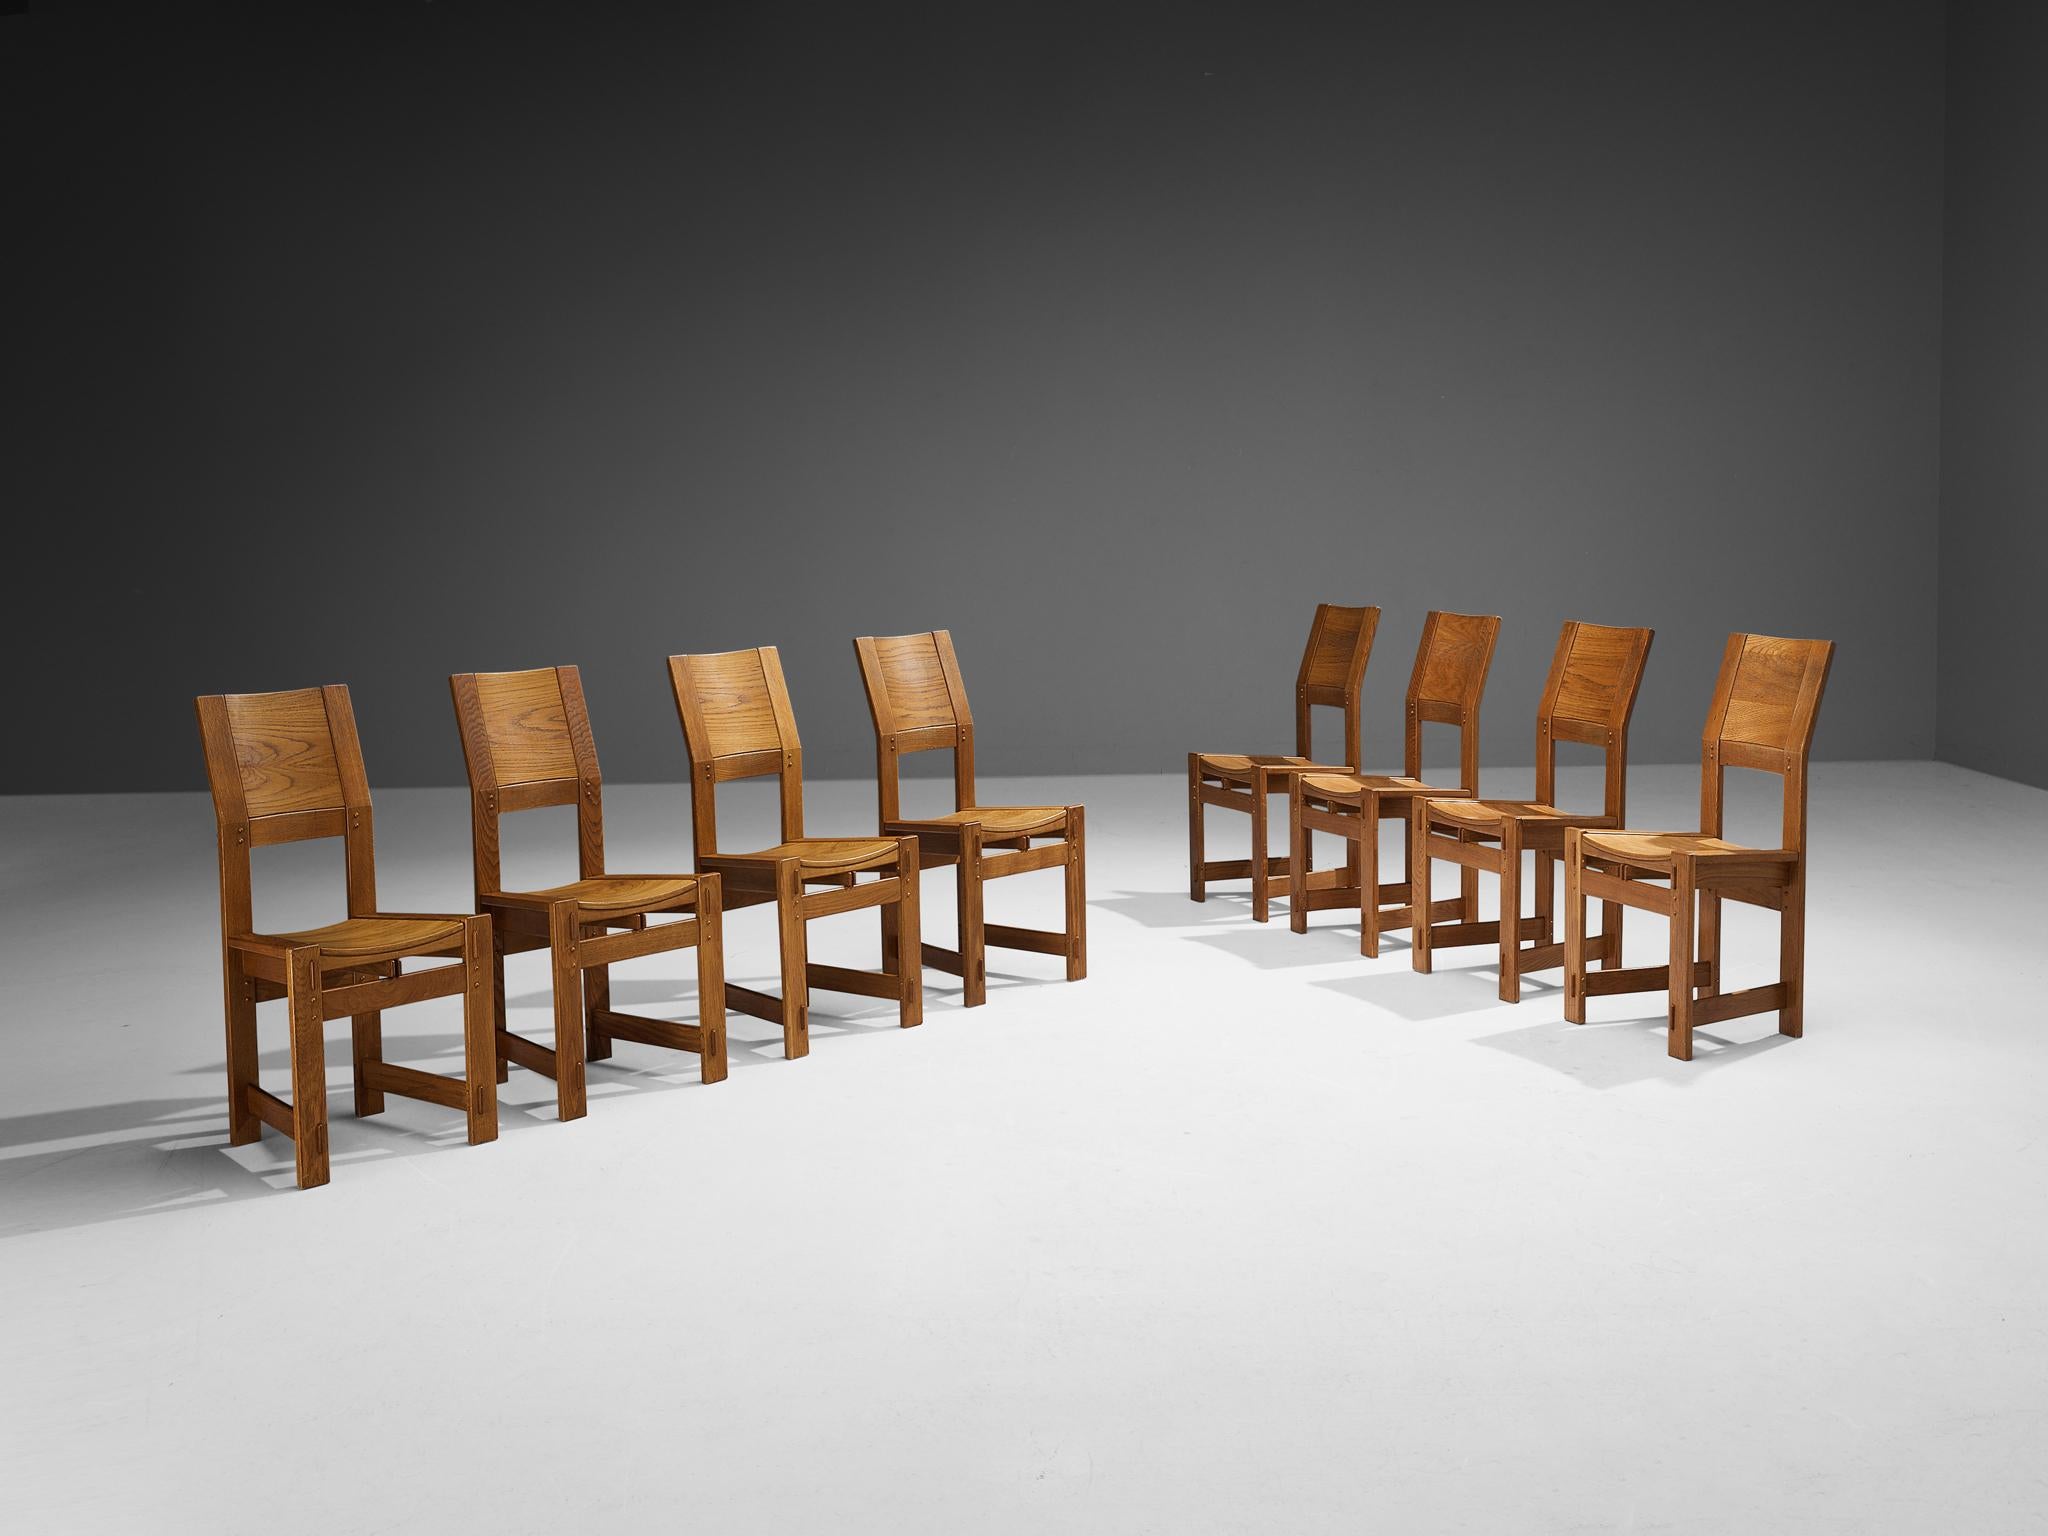 Giuseppe Rivadossi pour Officina Rivadossi, ensemble de huit chaises de salle à manger, chêne, Italie, vers 1980

Un ensemble exceptionnel de chaises du sculpteur et designer italien Giuseppe Rivadossi, présentant un haut niveau d'artisanat dans le